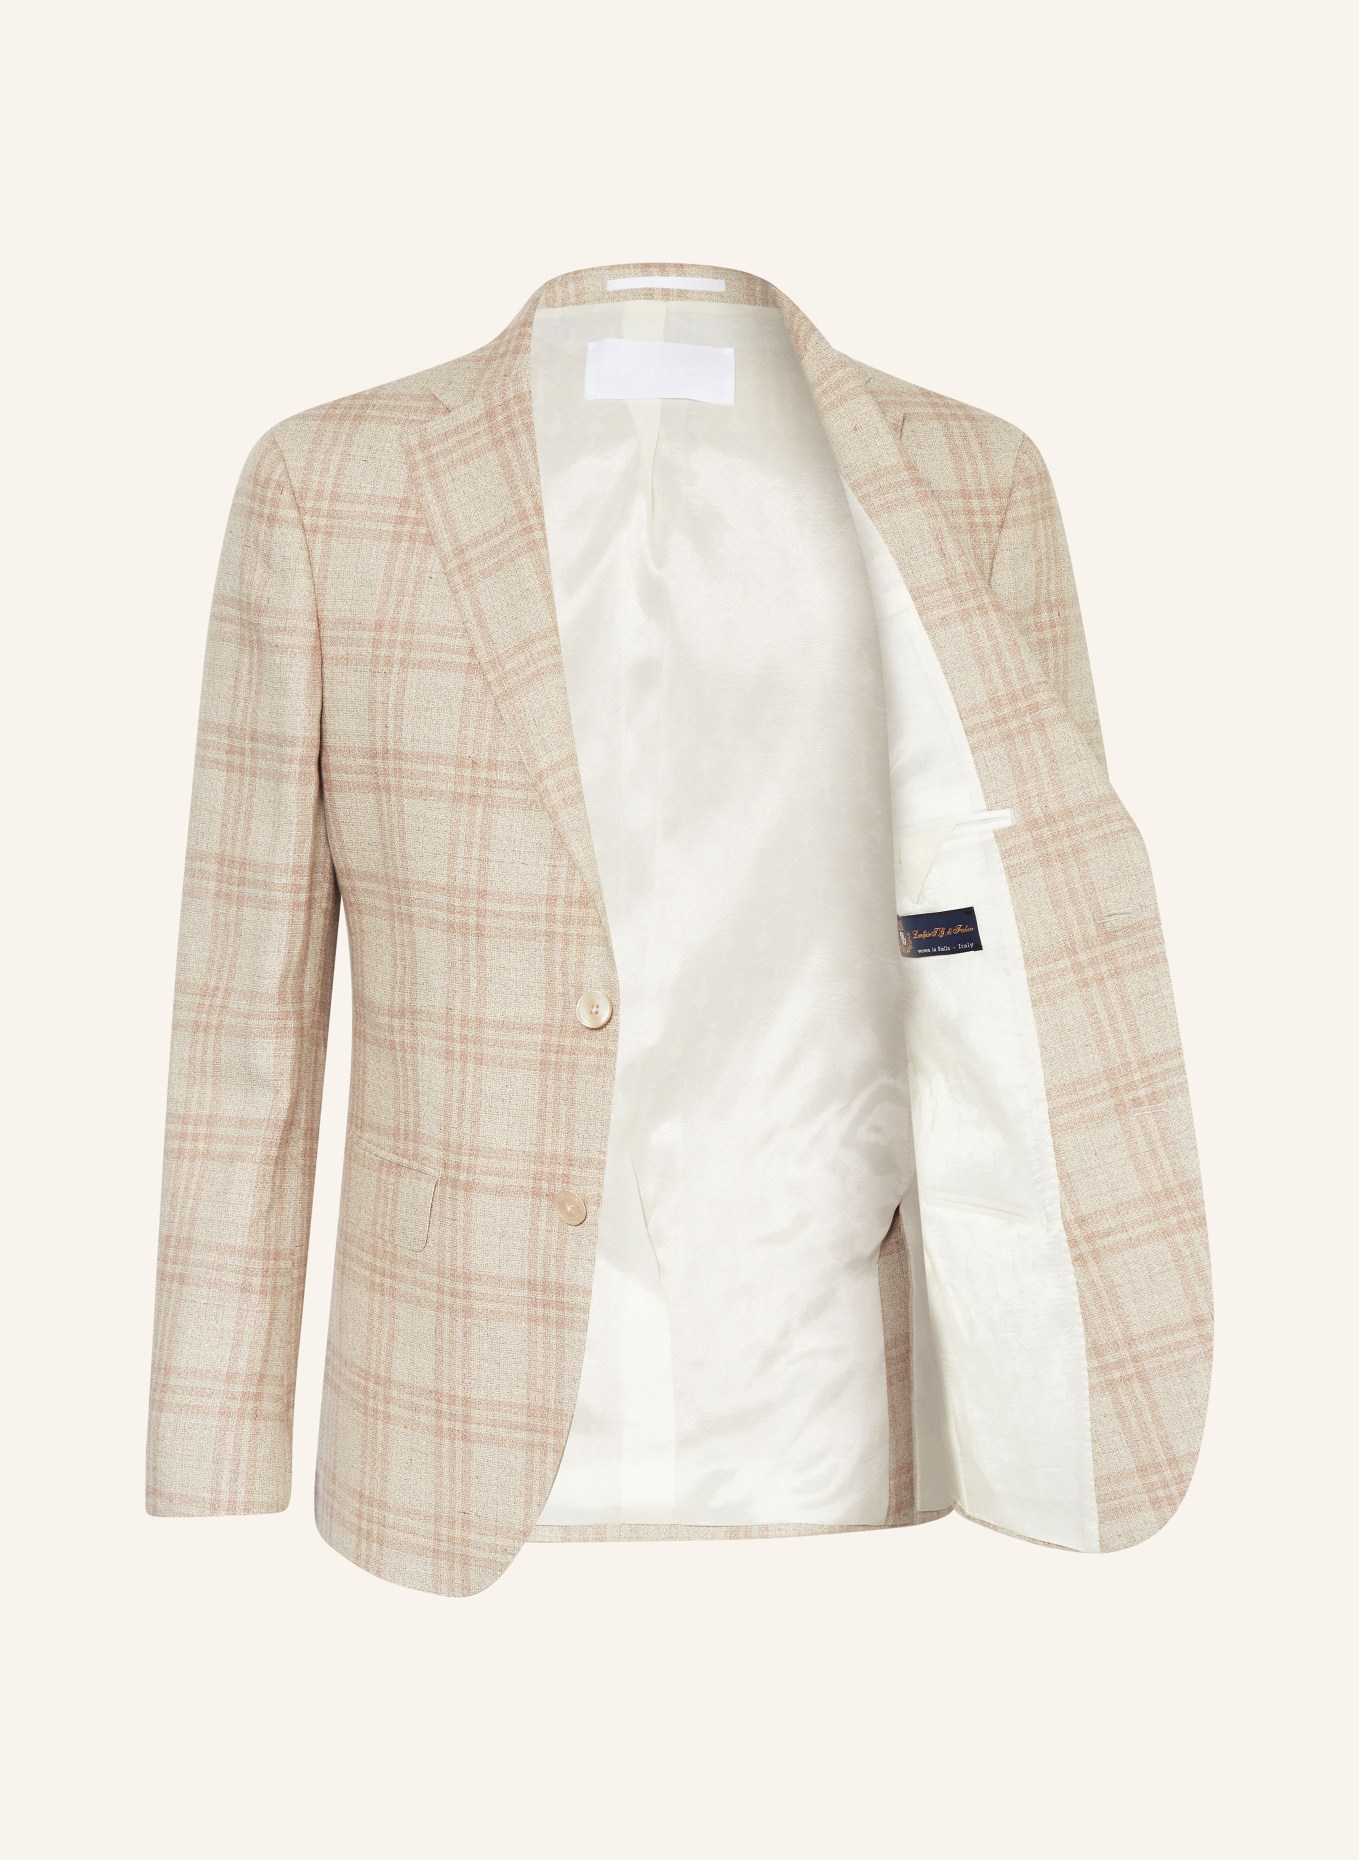 BALDESSARINI Suit jacket SERANO slim fit, Color: 8620 Irish Cream Check (Image 4)